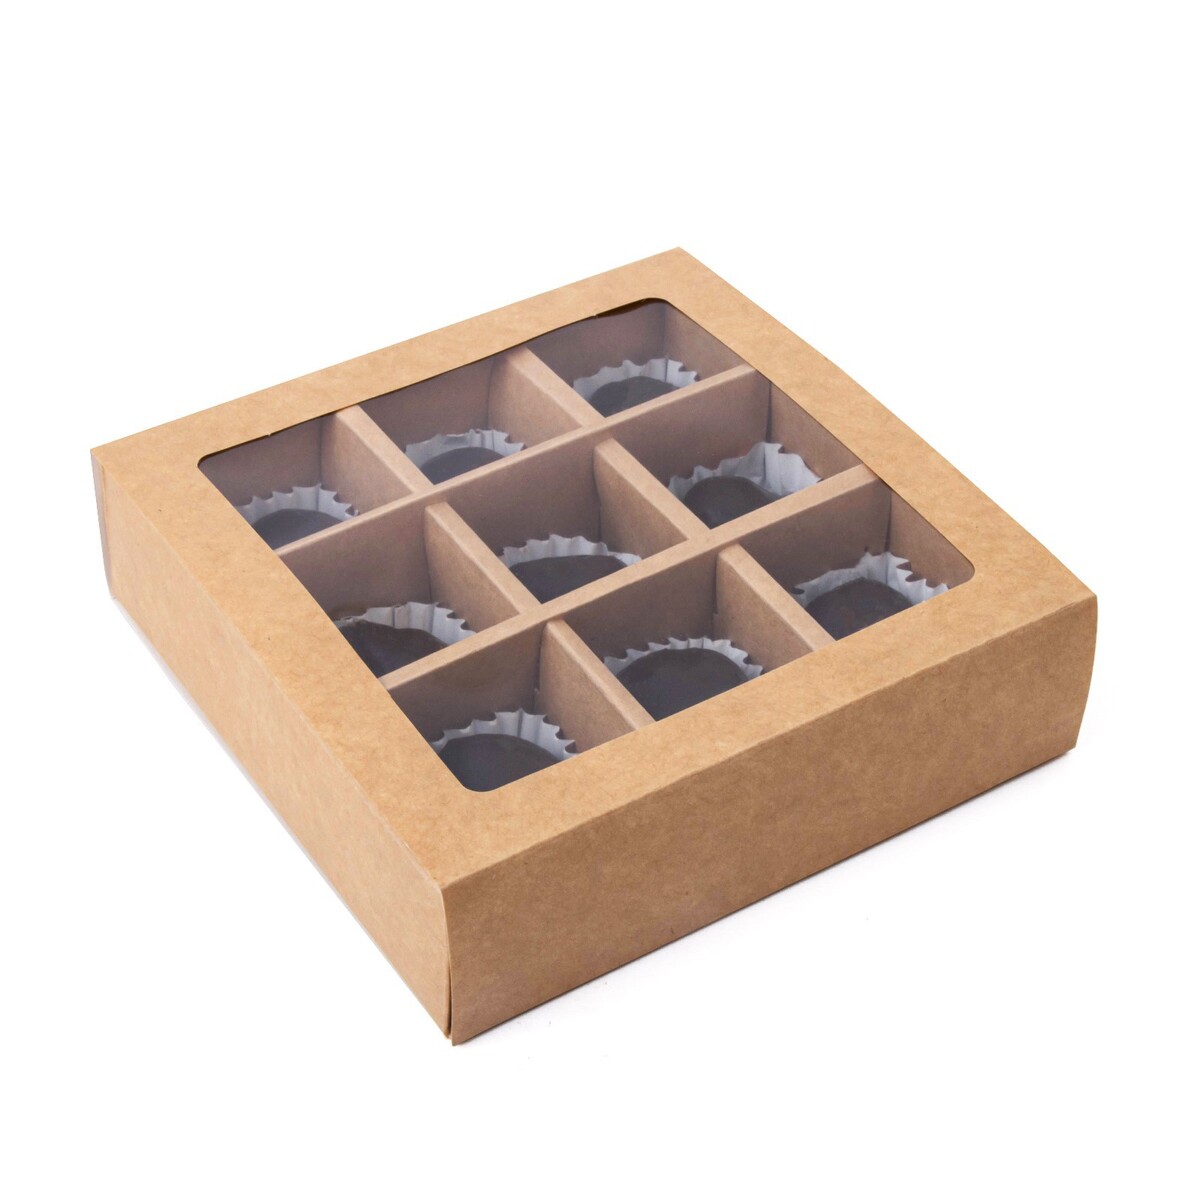 Коробка складная под 9 конфет, крафт, 13,8 х 13,8 х 3,8 см коробка складная под 9 конфет крафт 13 8 х 13 8 х 3 8 см